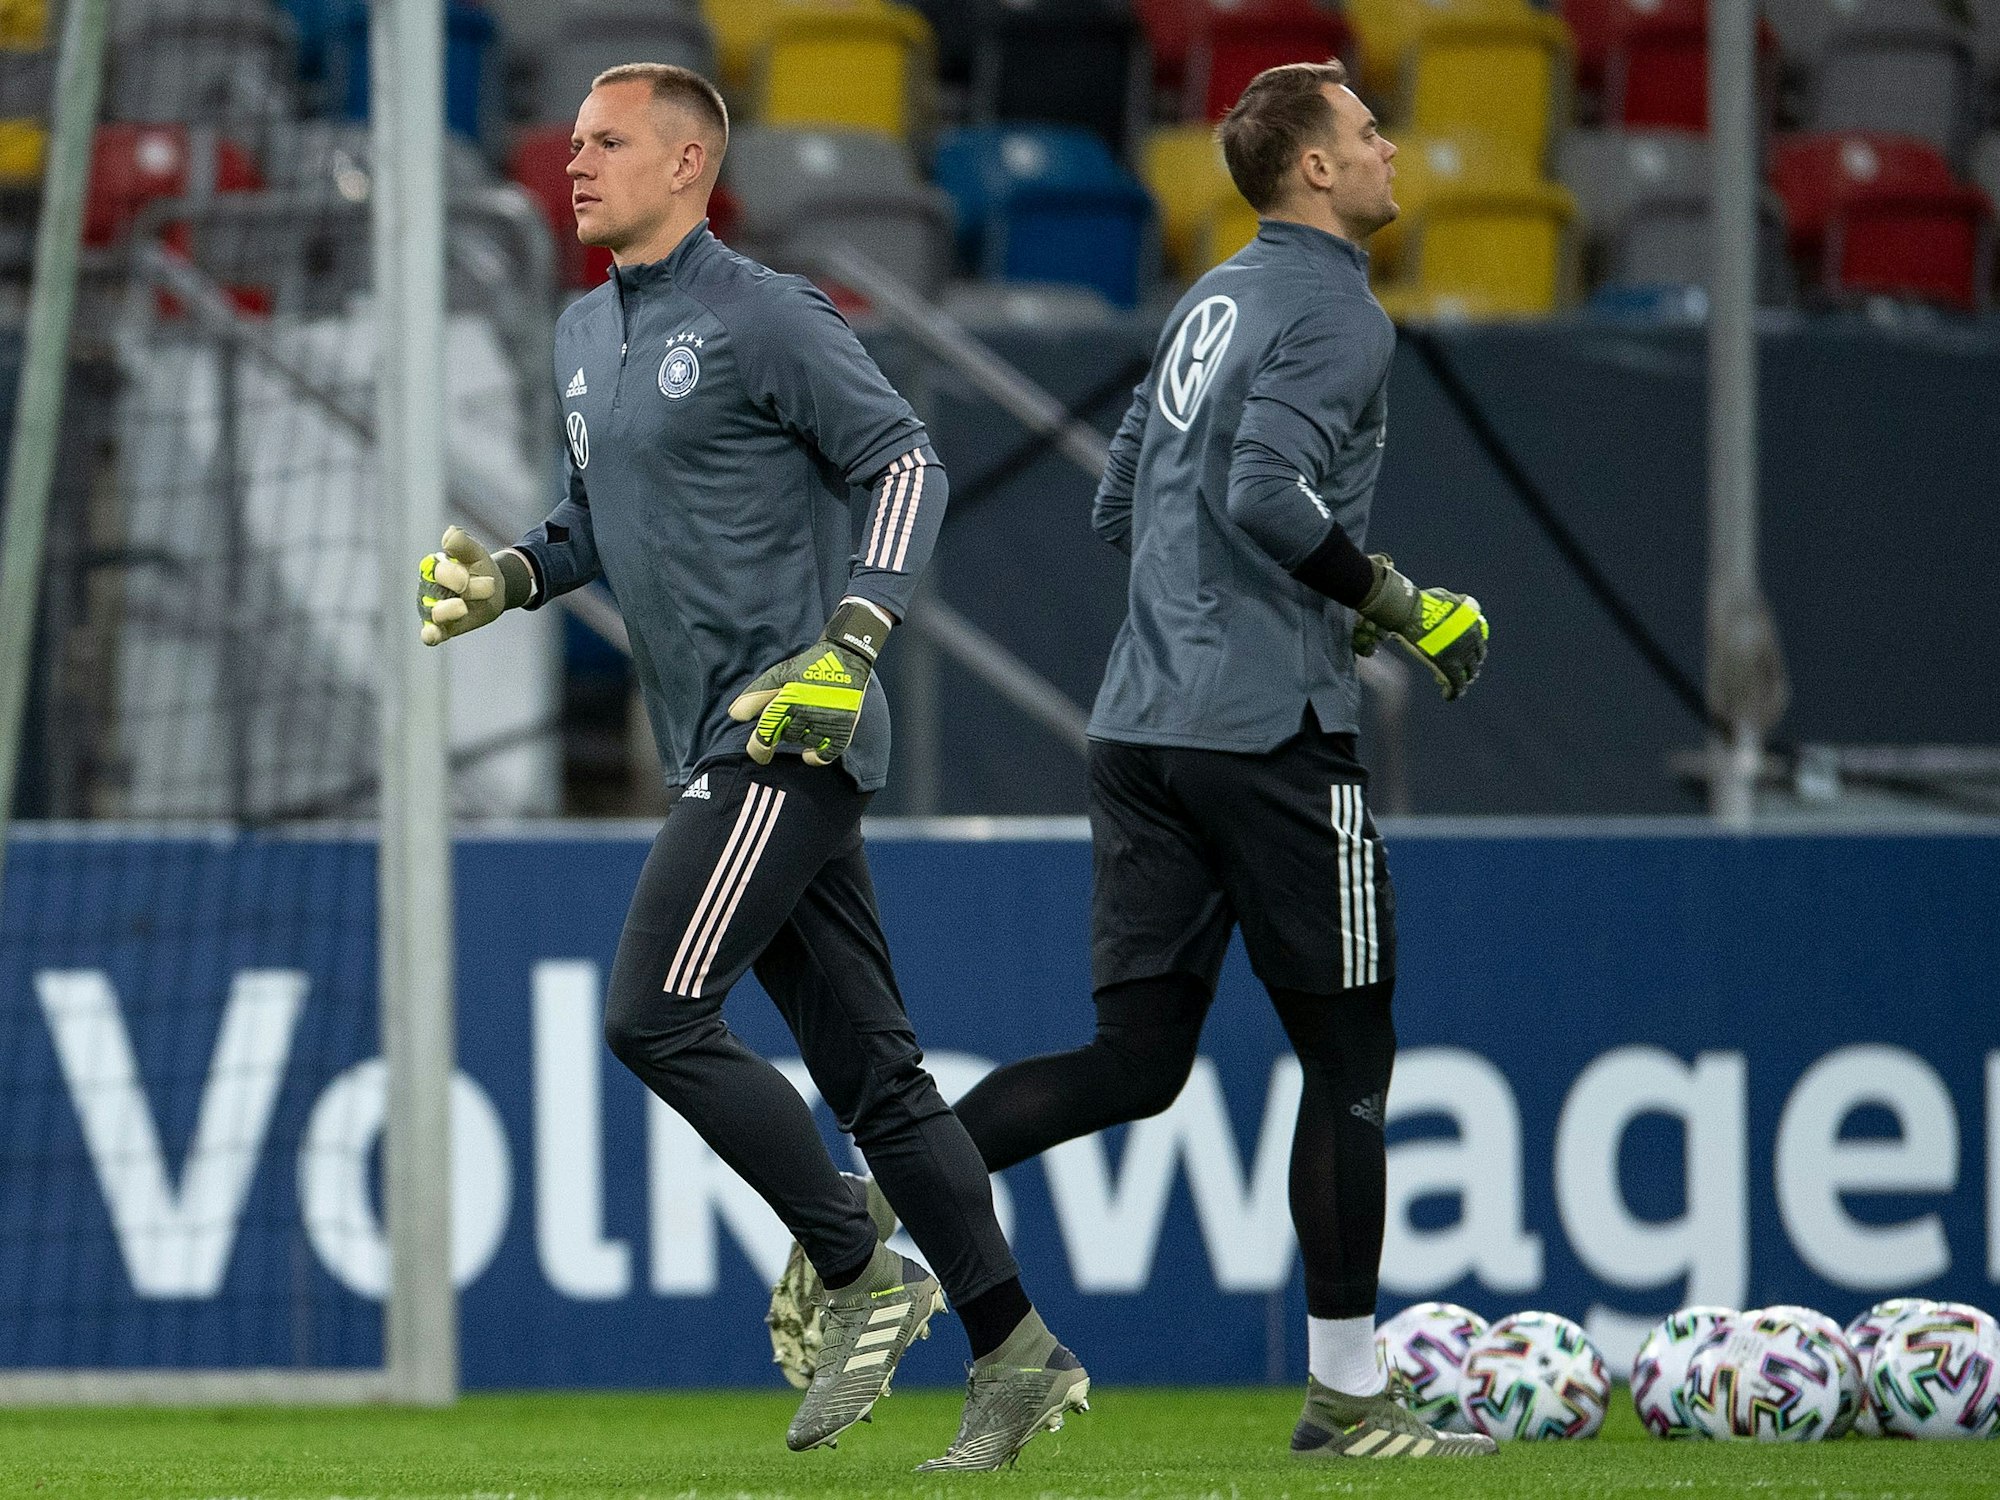 Die Torhüter Marc-Andre ter Stegen (l) und Manuel Neuer laufen bei einem Training in entgegengesetzter Richtung.